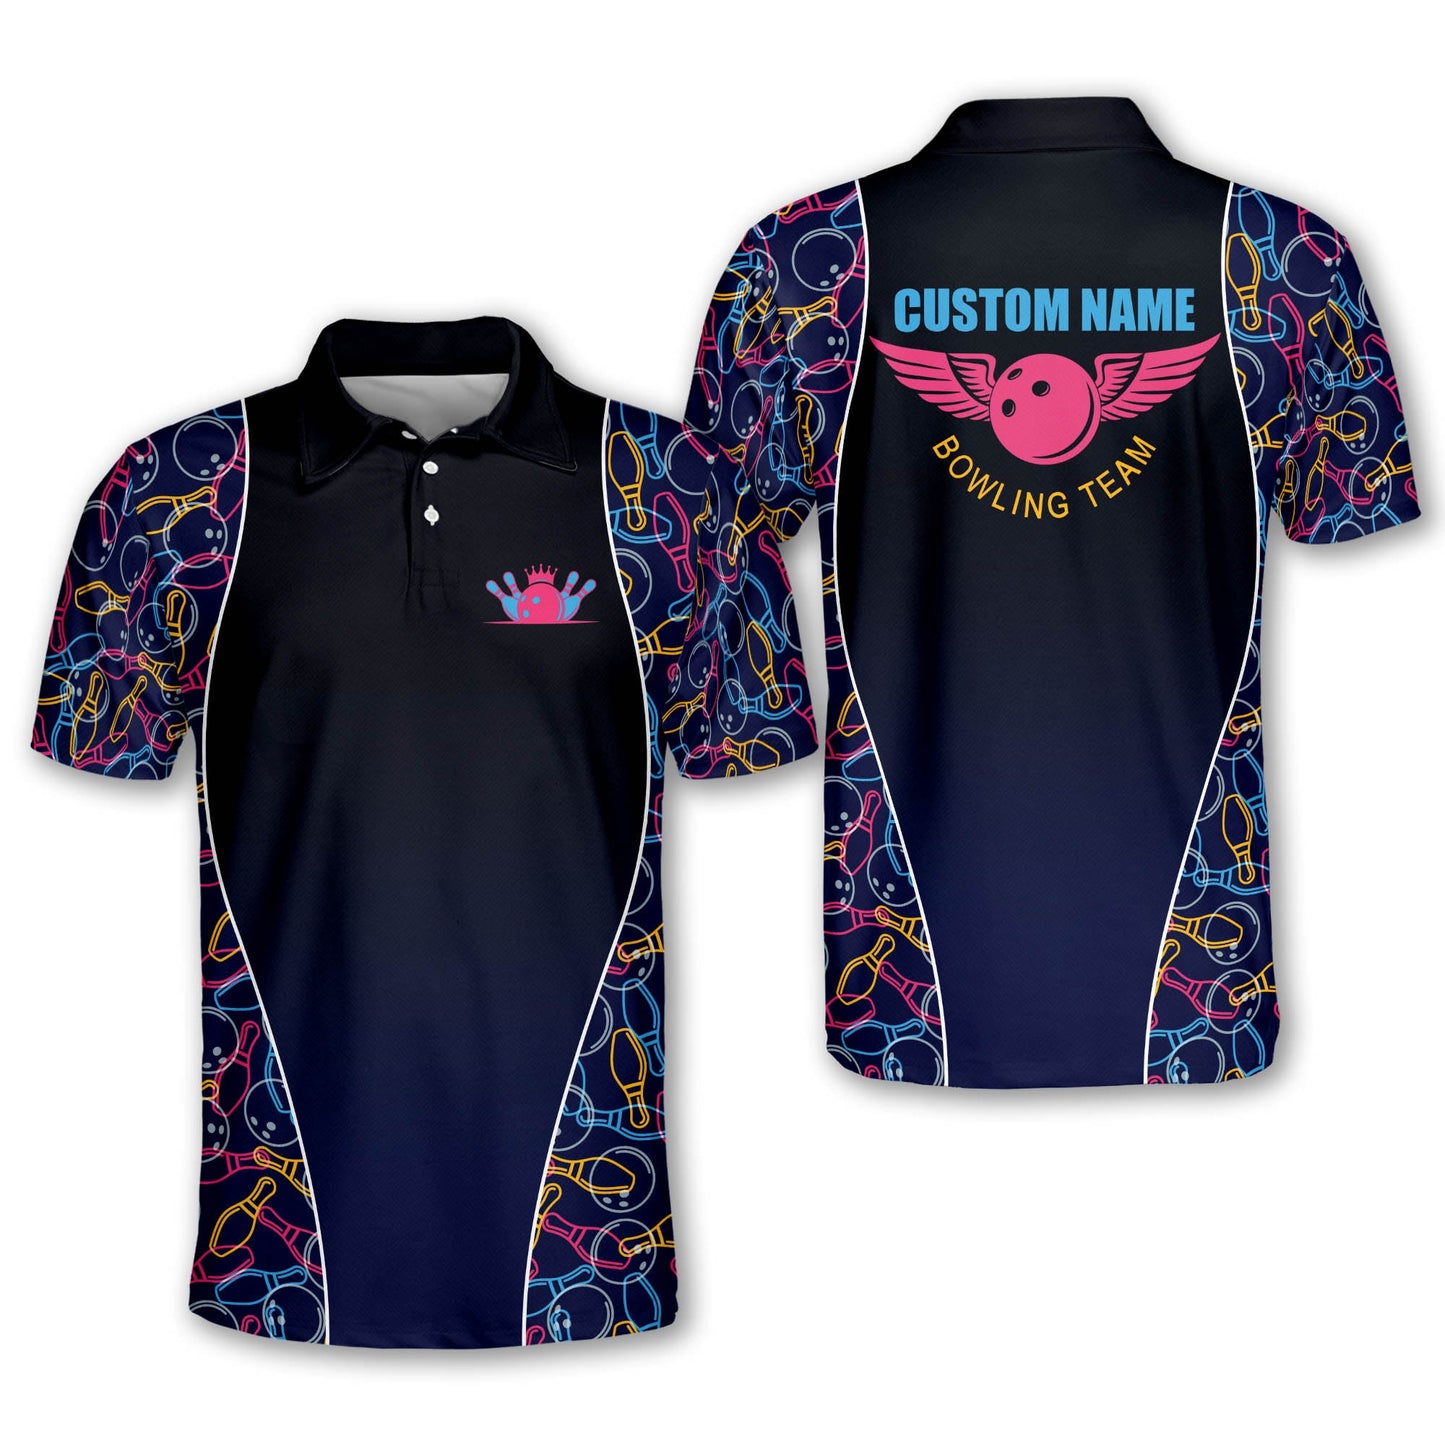 Custom Bowling Shirts For Men - Men's Bowling Team Shirts - Mens Skull Designer Bowling Shirt - Customized USA Camo Short Sleeve Bowling Shirt For Men BM0148